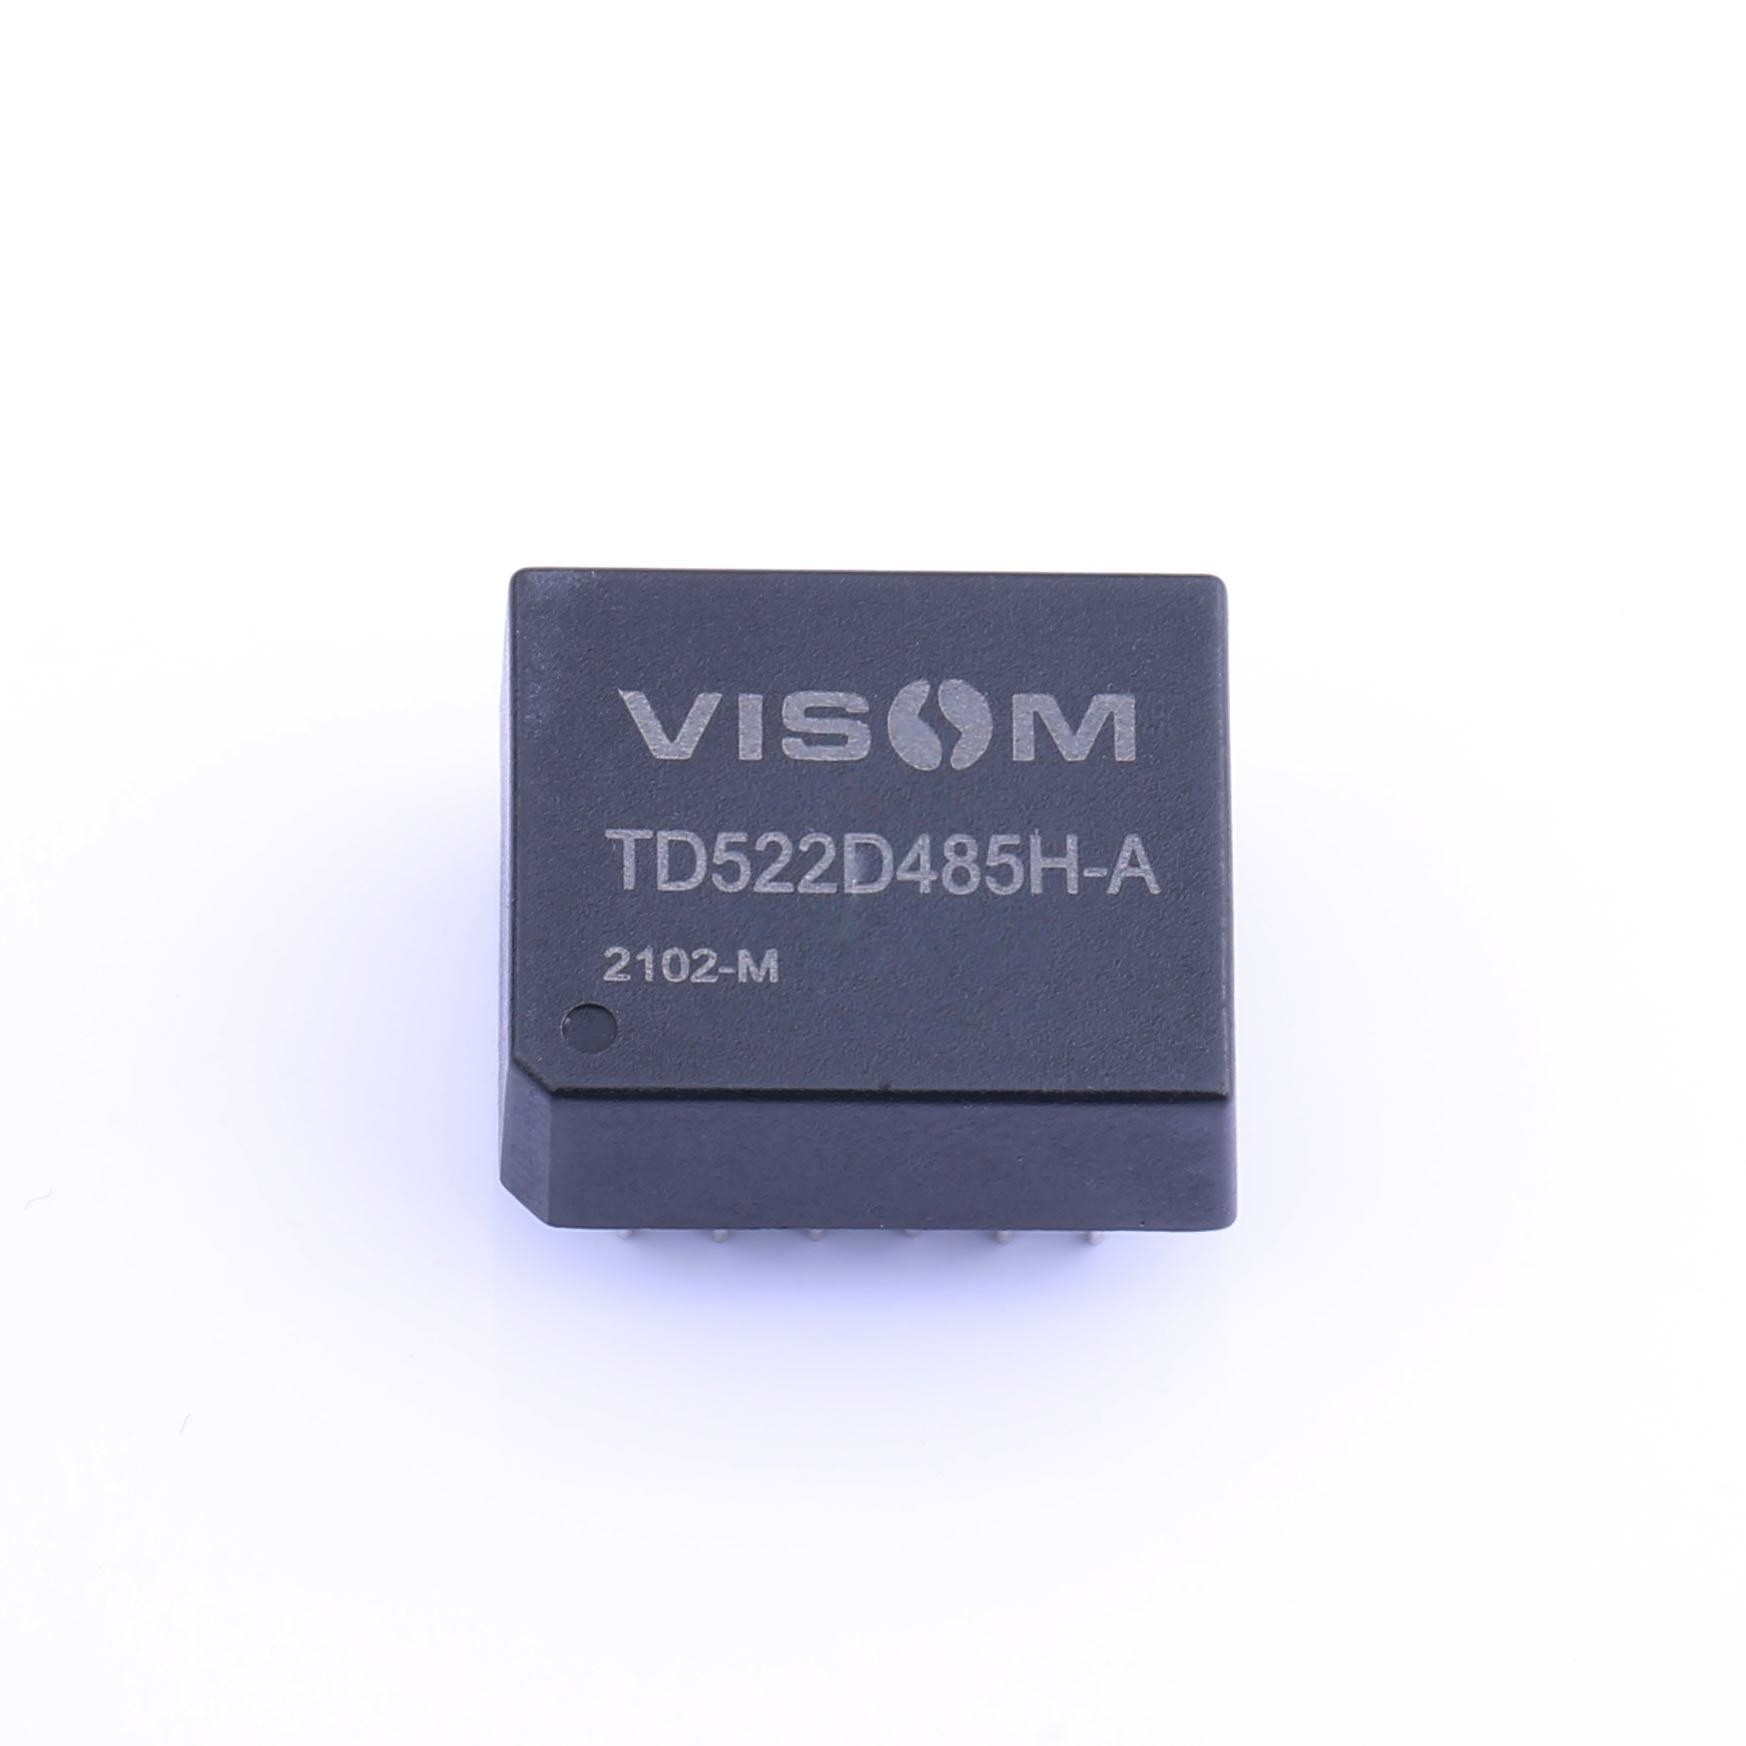 VISOM TD522D485H-A